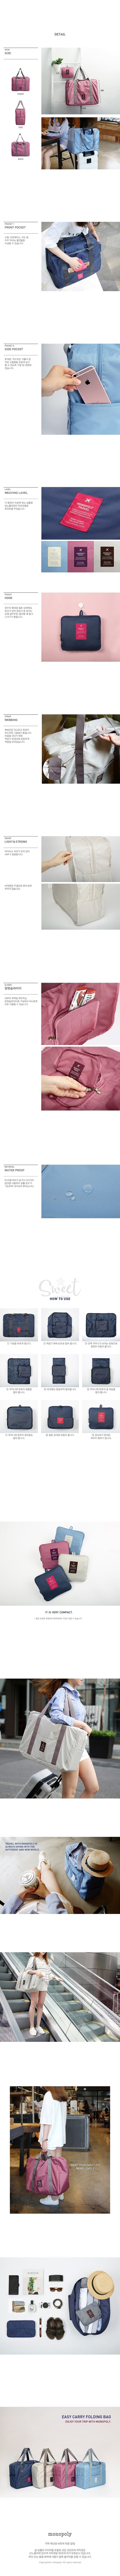 【韩国 MONOPOLY 】超轻可折叠旅行包购物单肩包加大行李包 -  - 2@ - Sweet Living